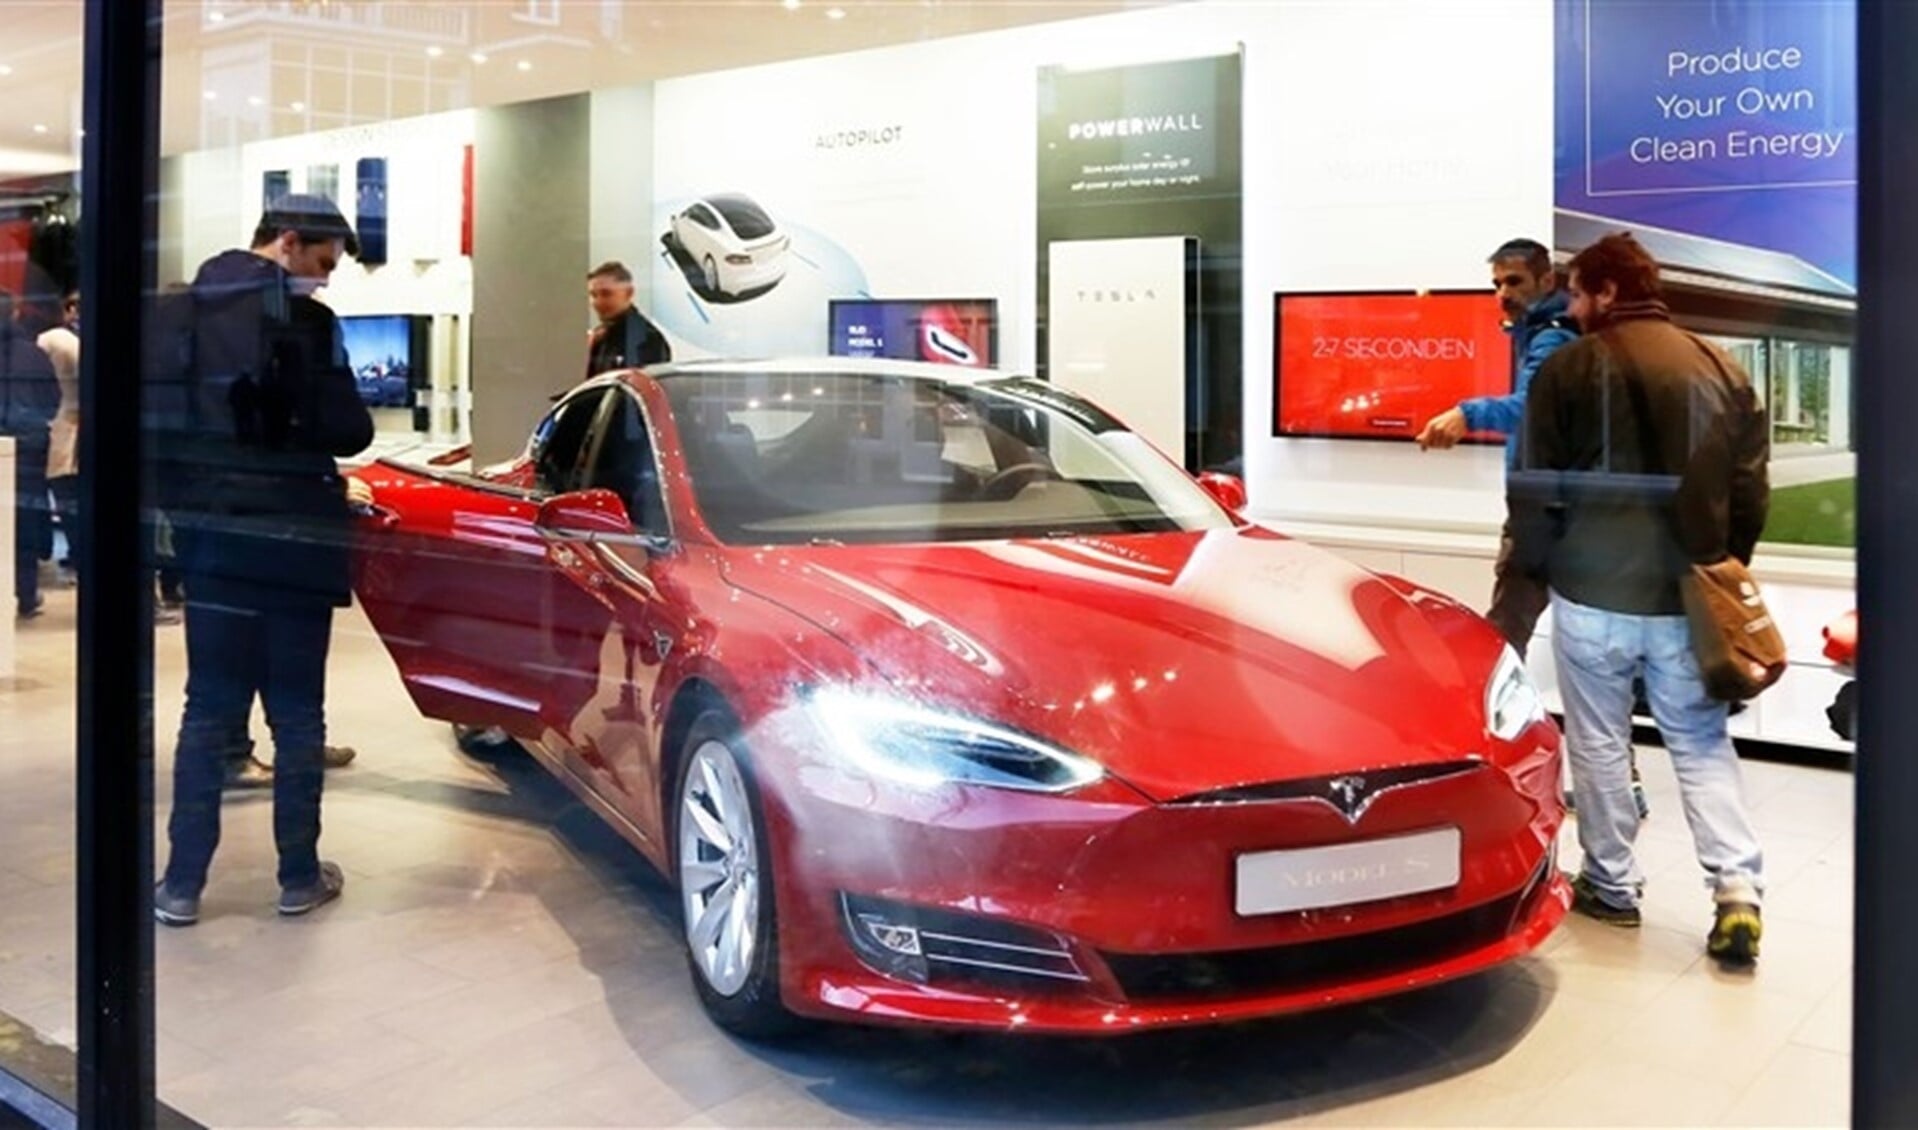 Geinteresseerden bekijken rode Tesla in winkel